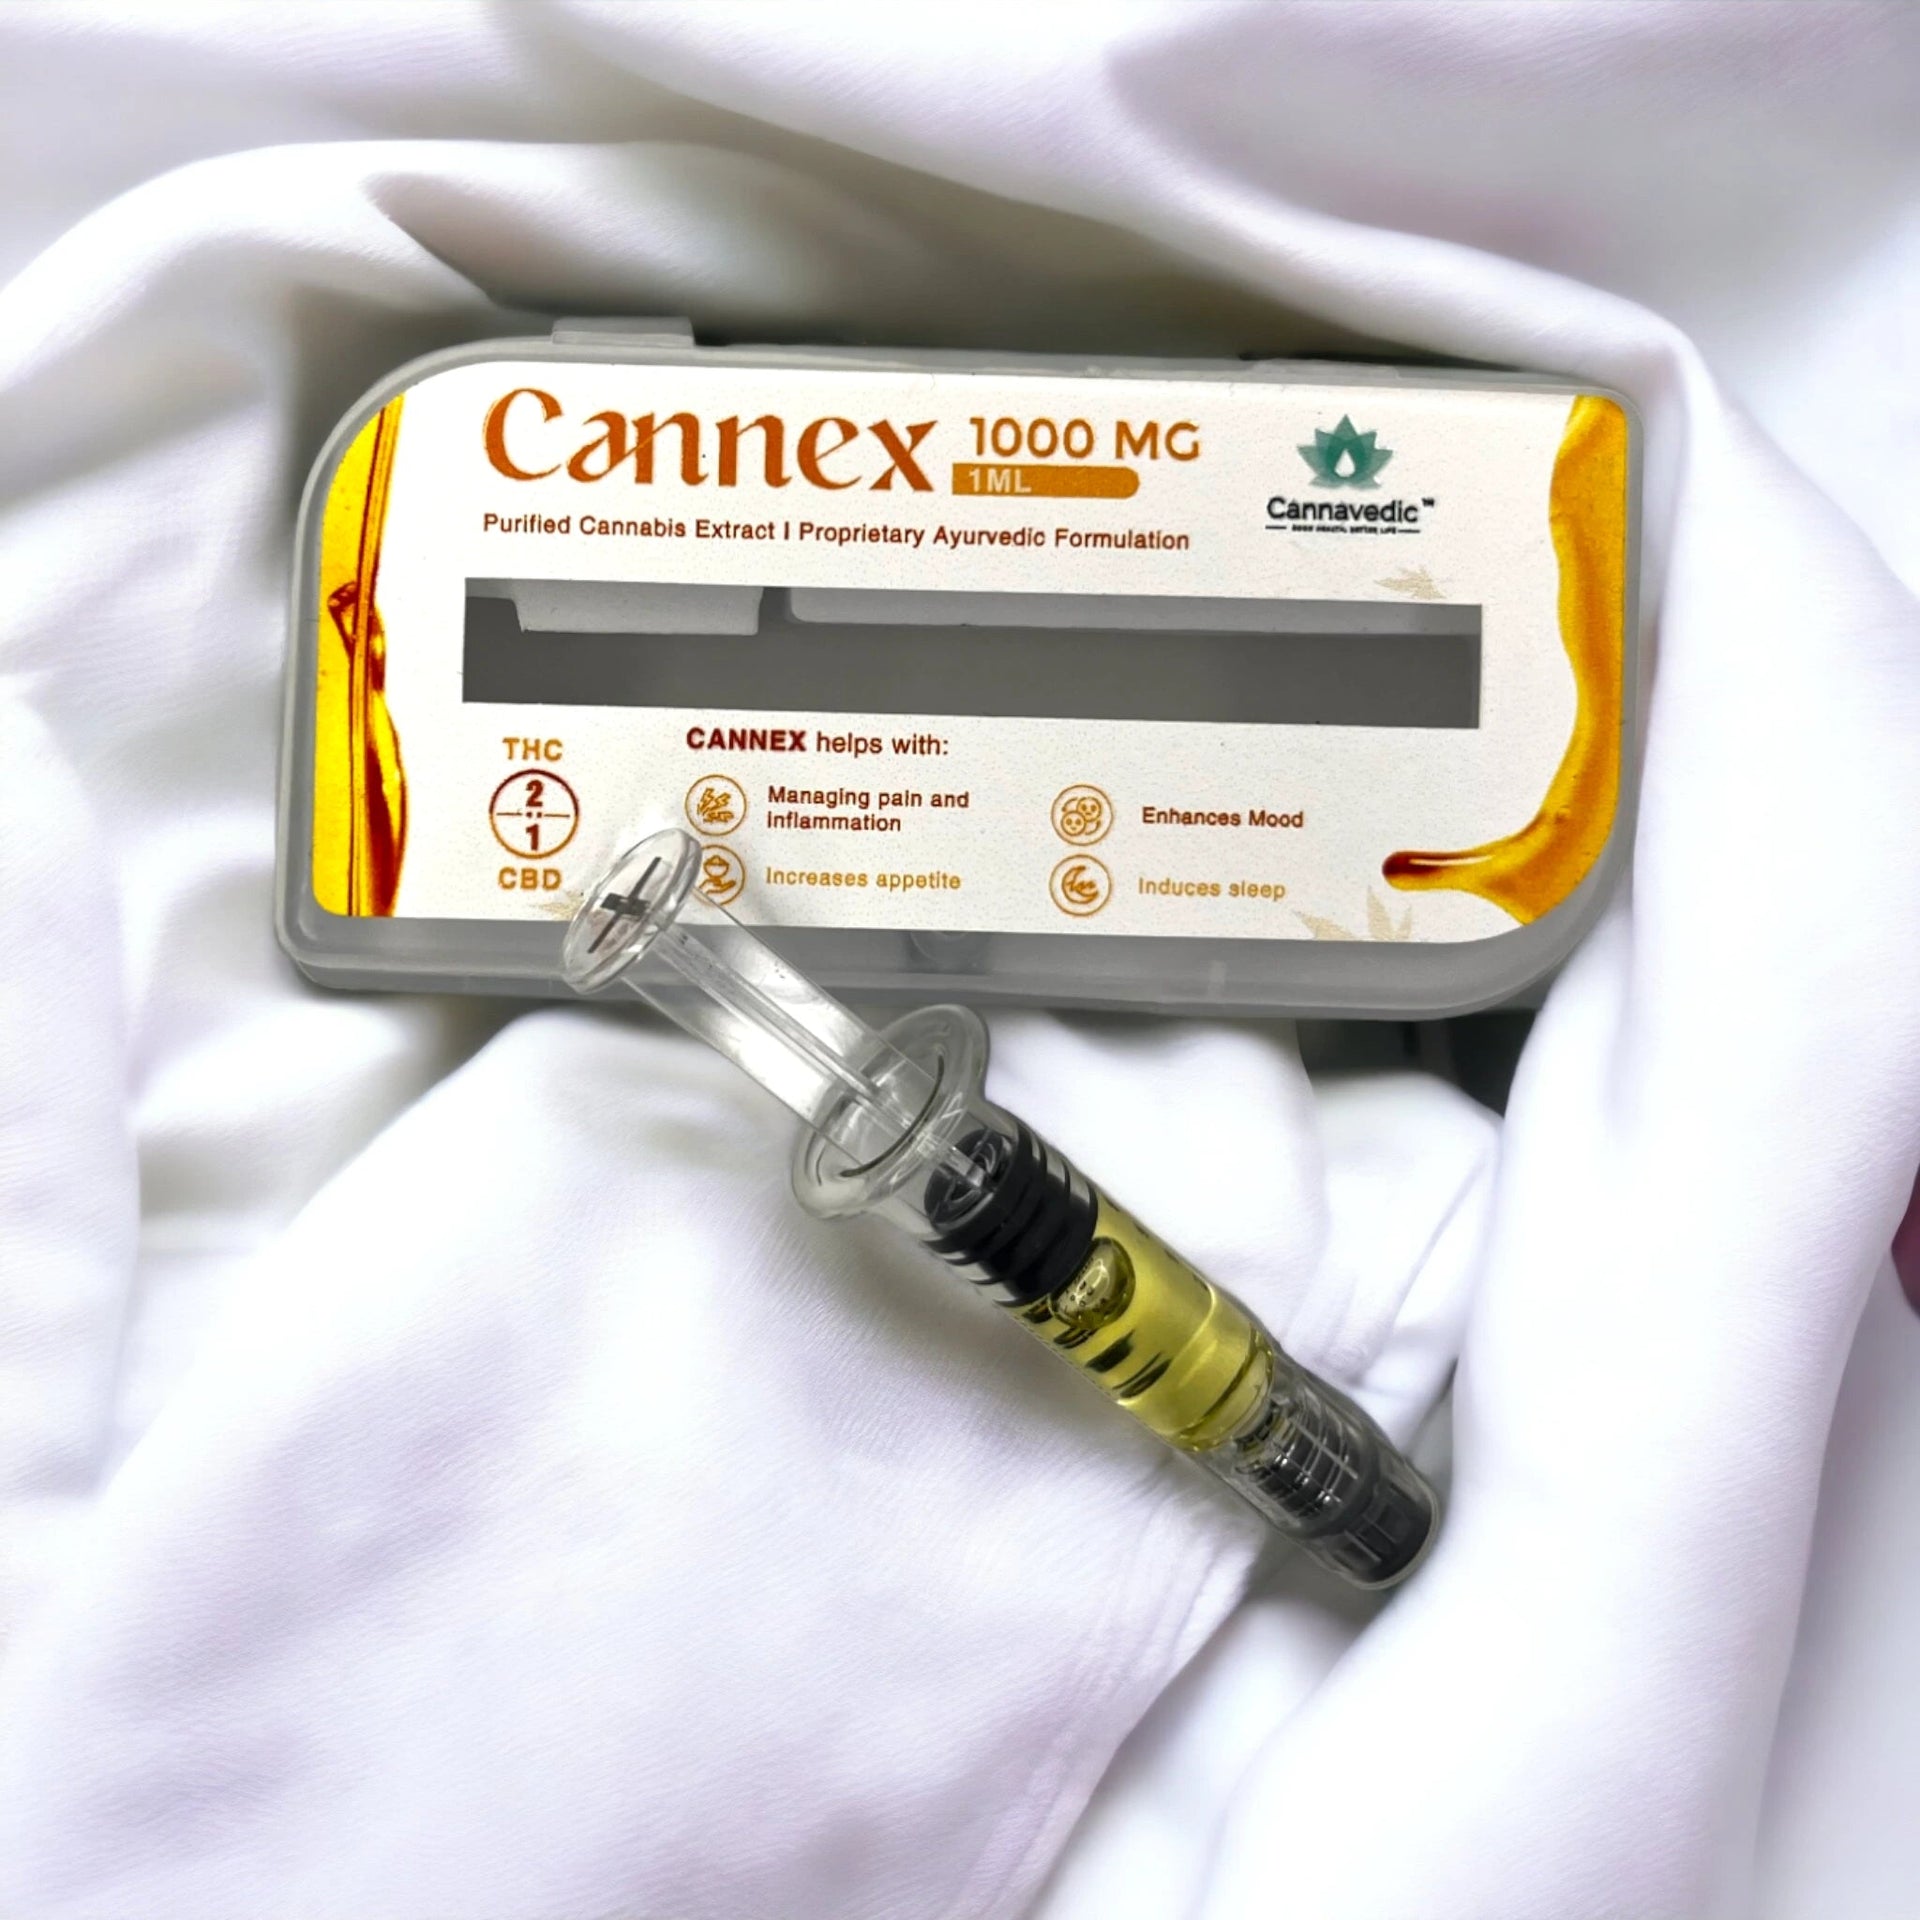 Cannavedic - CannnExTHC+CBD Extract (2:1|THC:CBD) 1000mg,1ml - CBD Store India